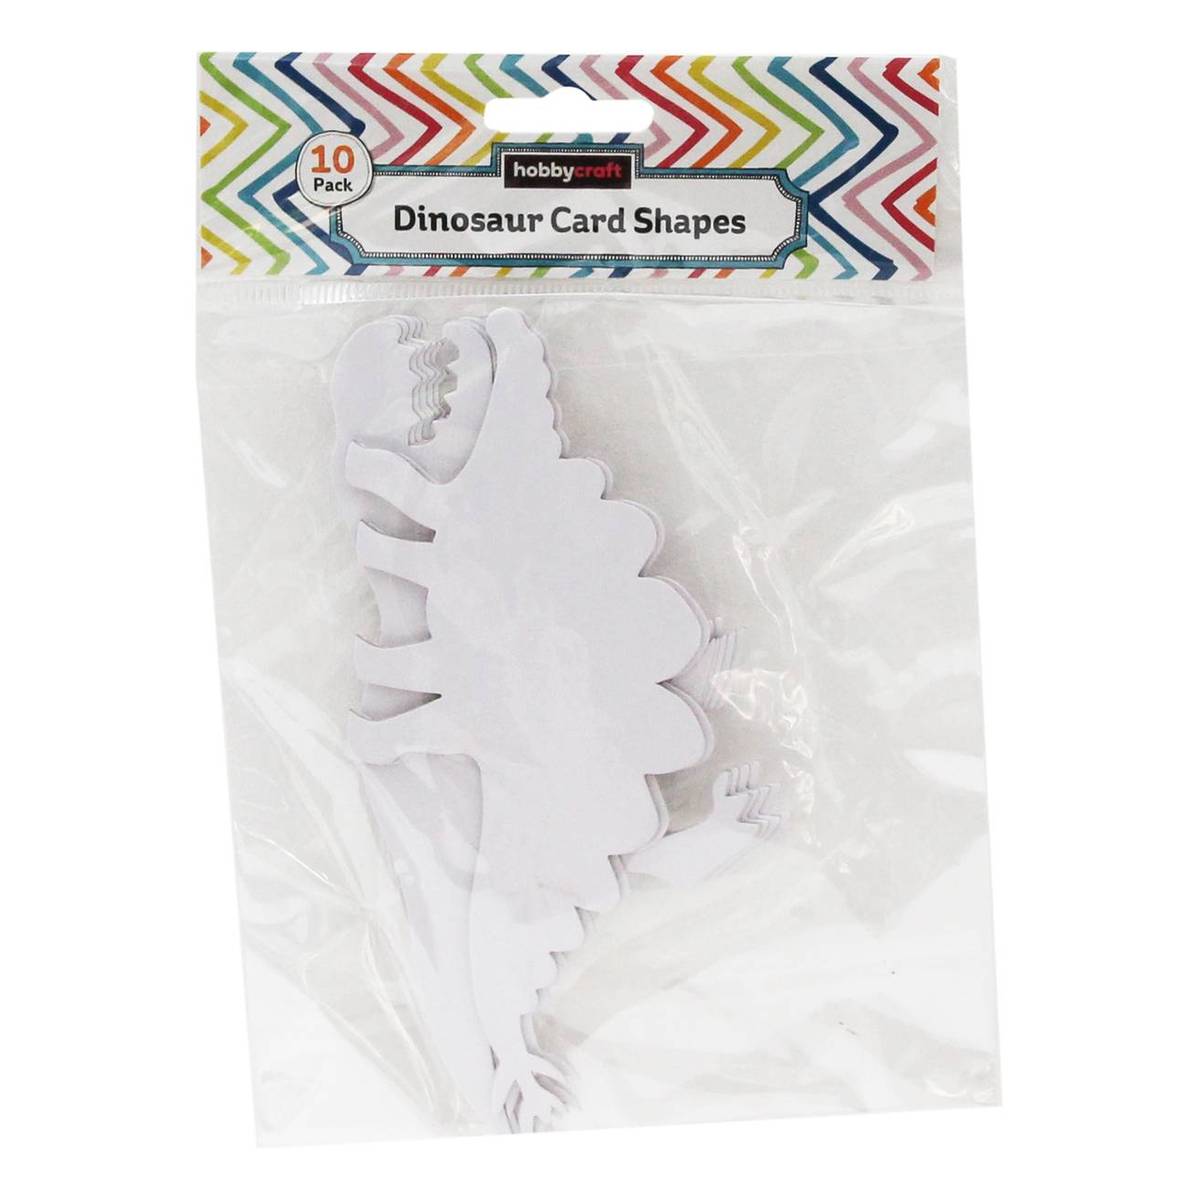 Dinosaur Card Shapes 10 Pack